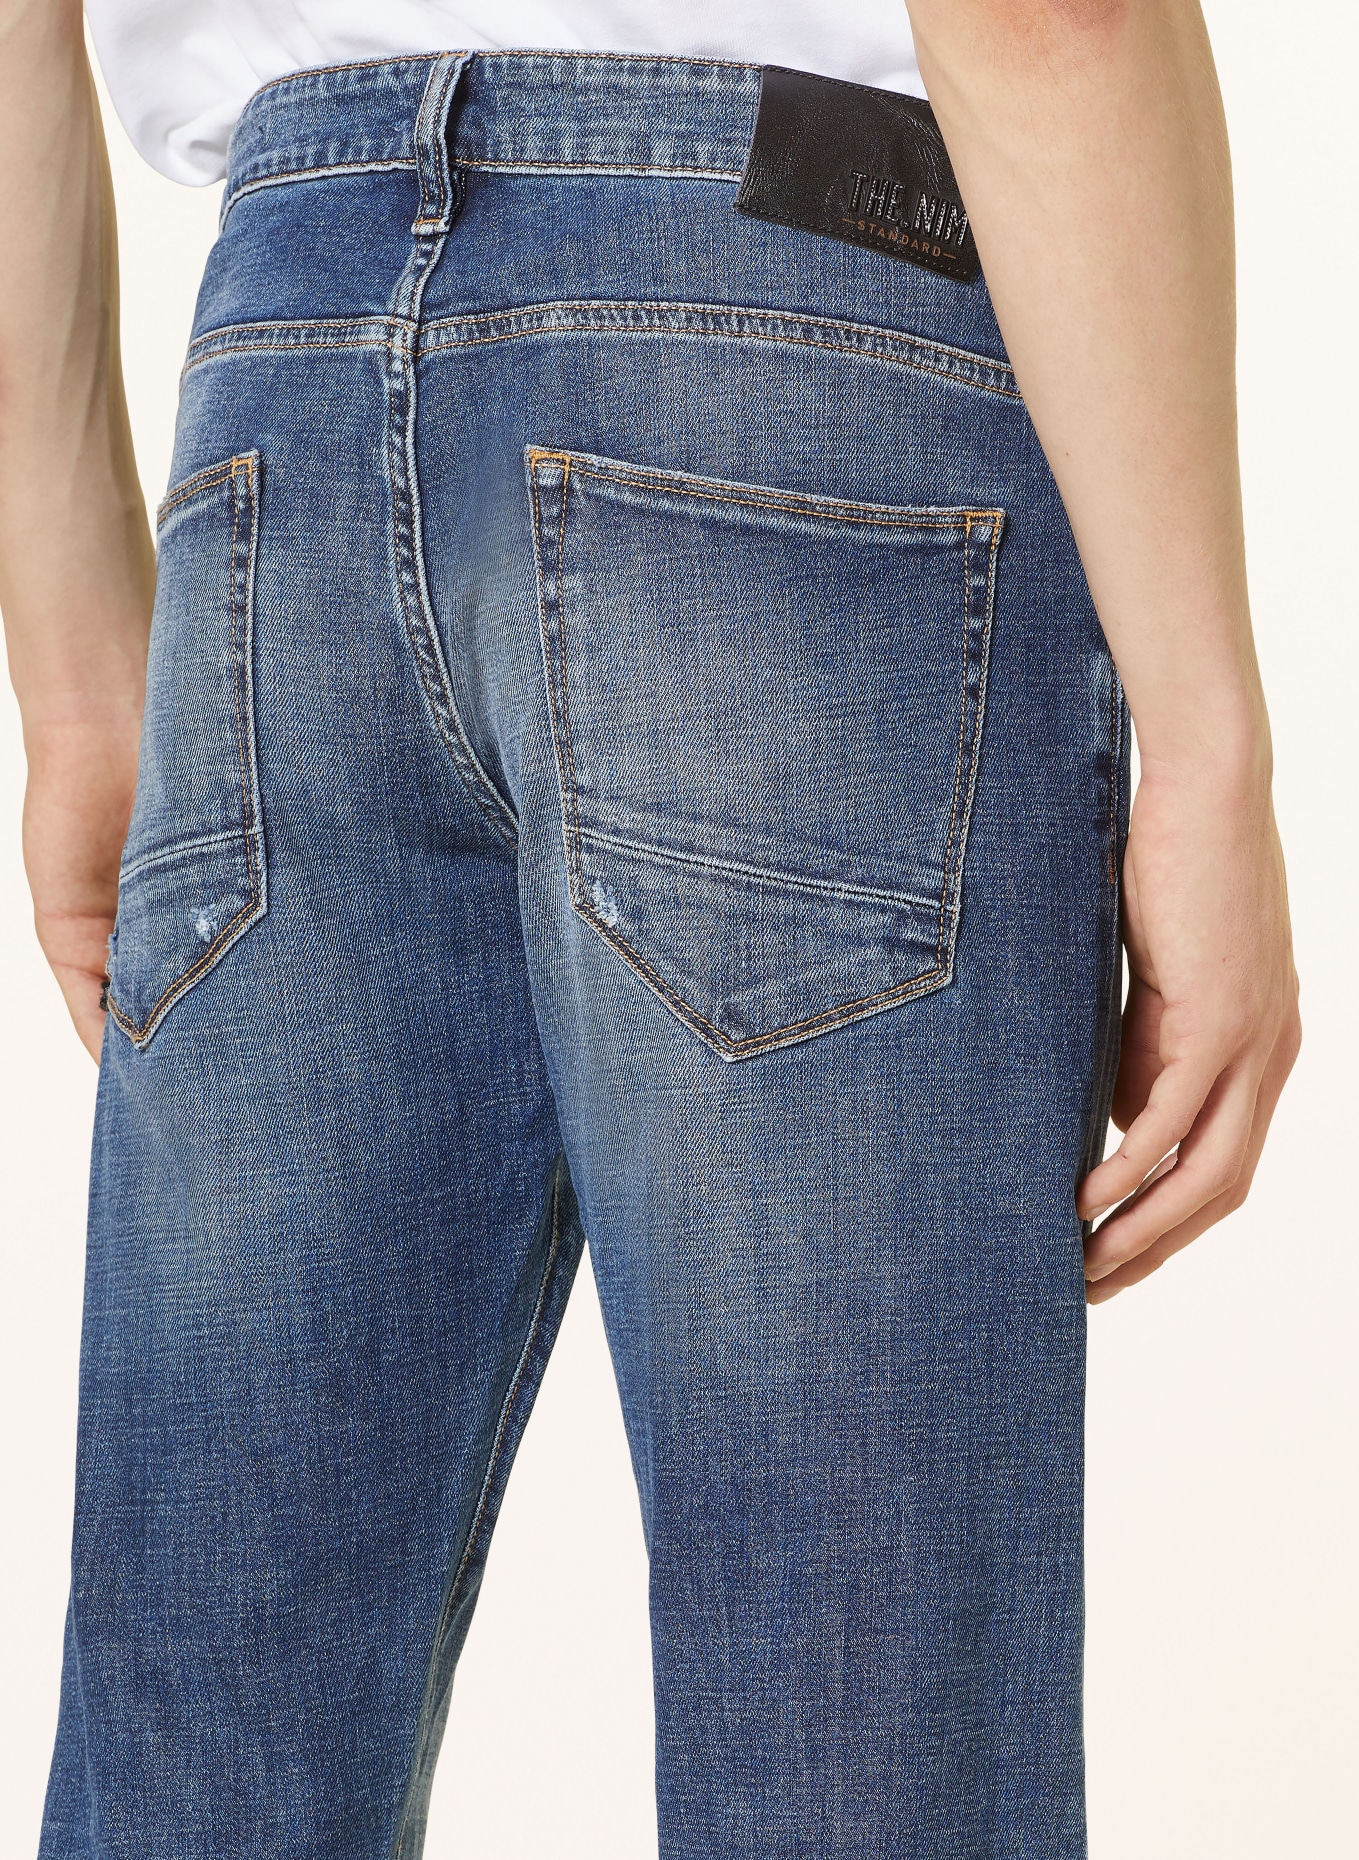 THE.NIM STANDARD Jeans DYLAN slim fit, Color: BLUE (Image 6)